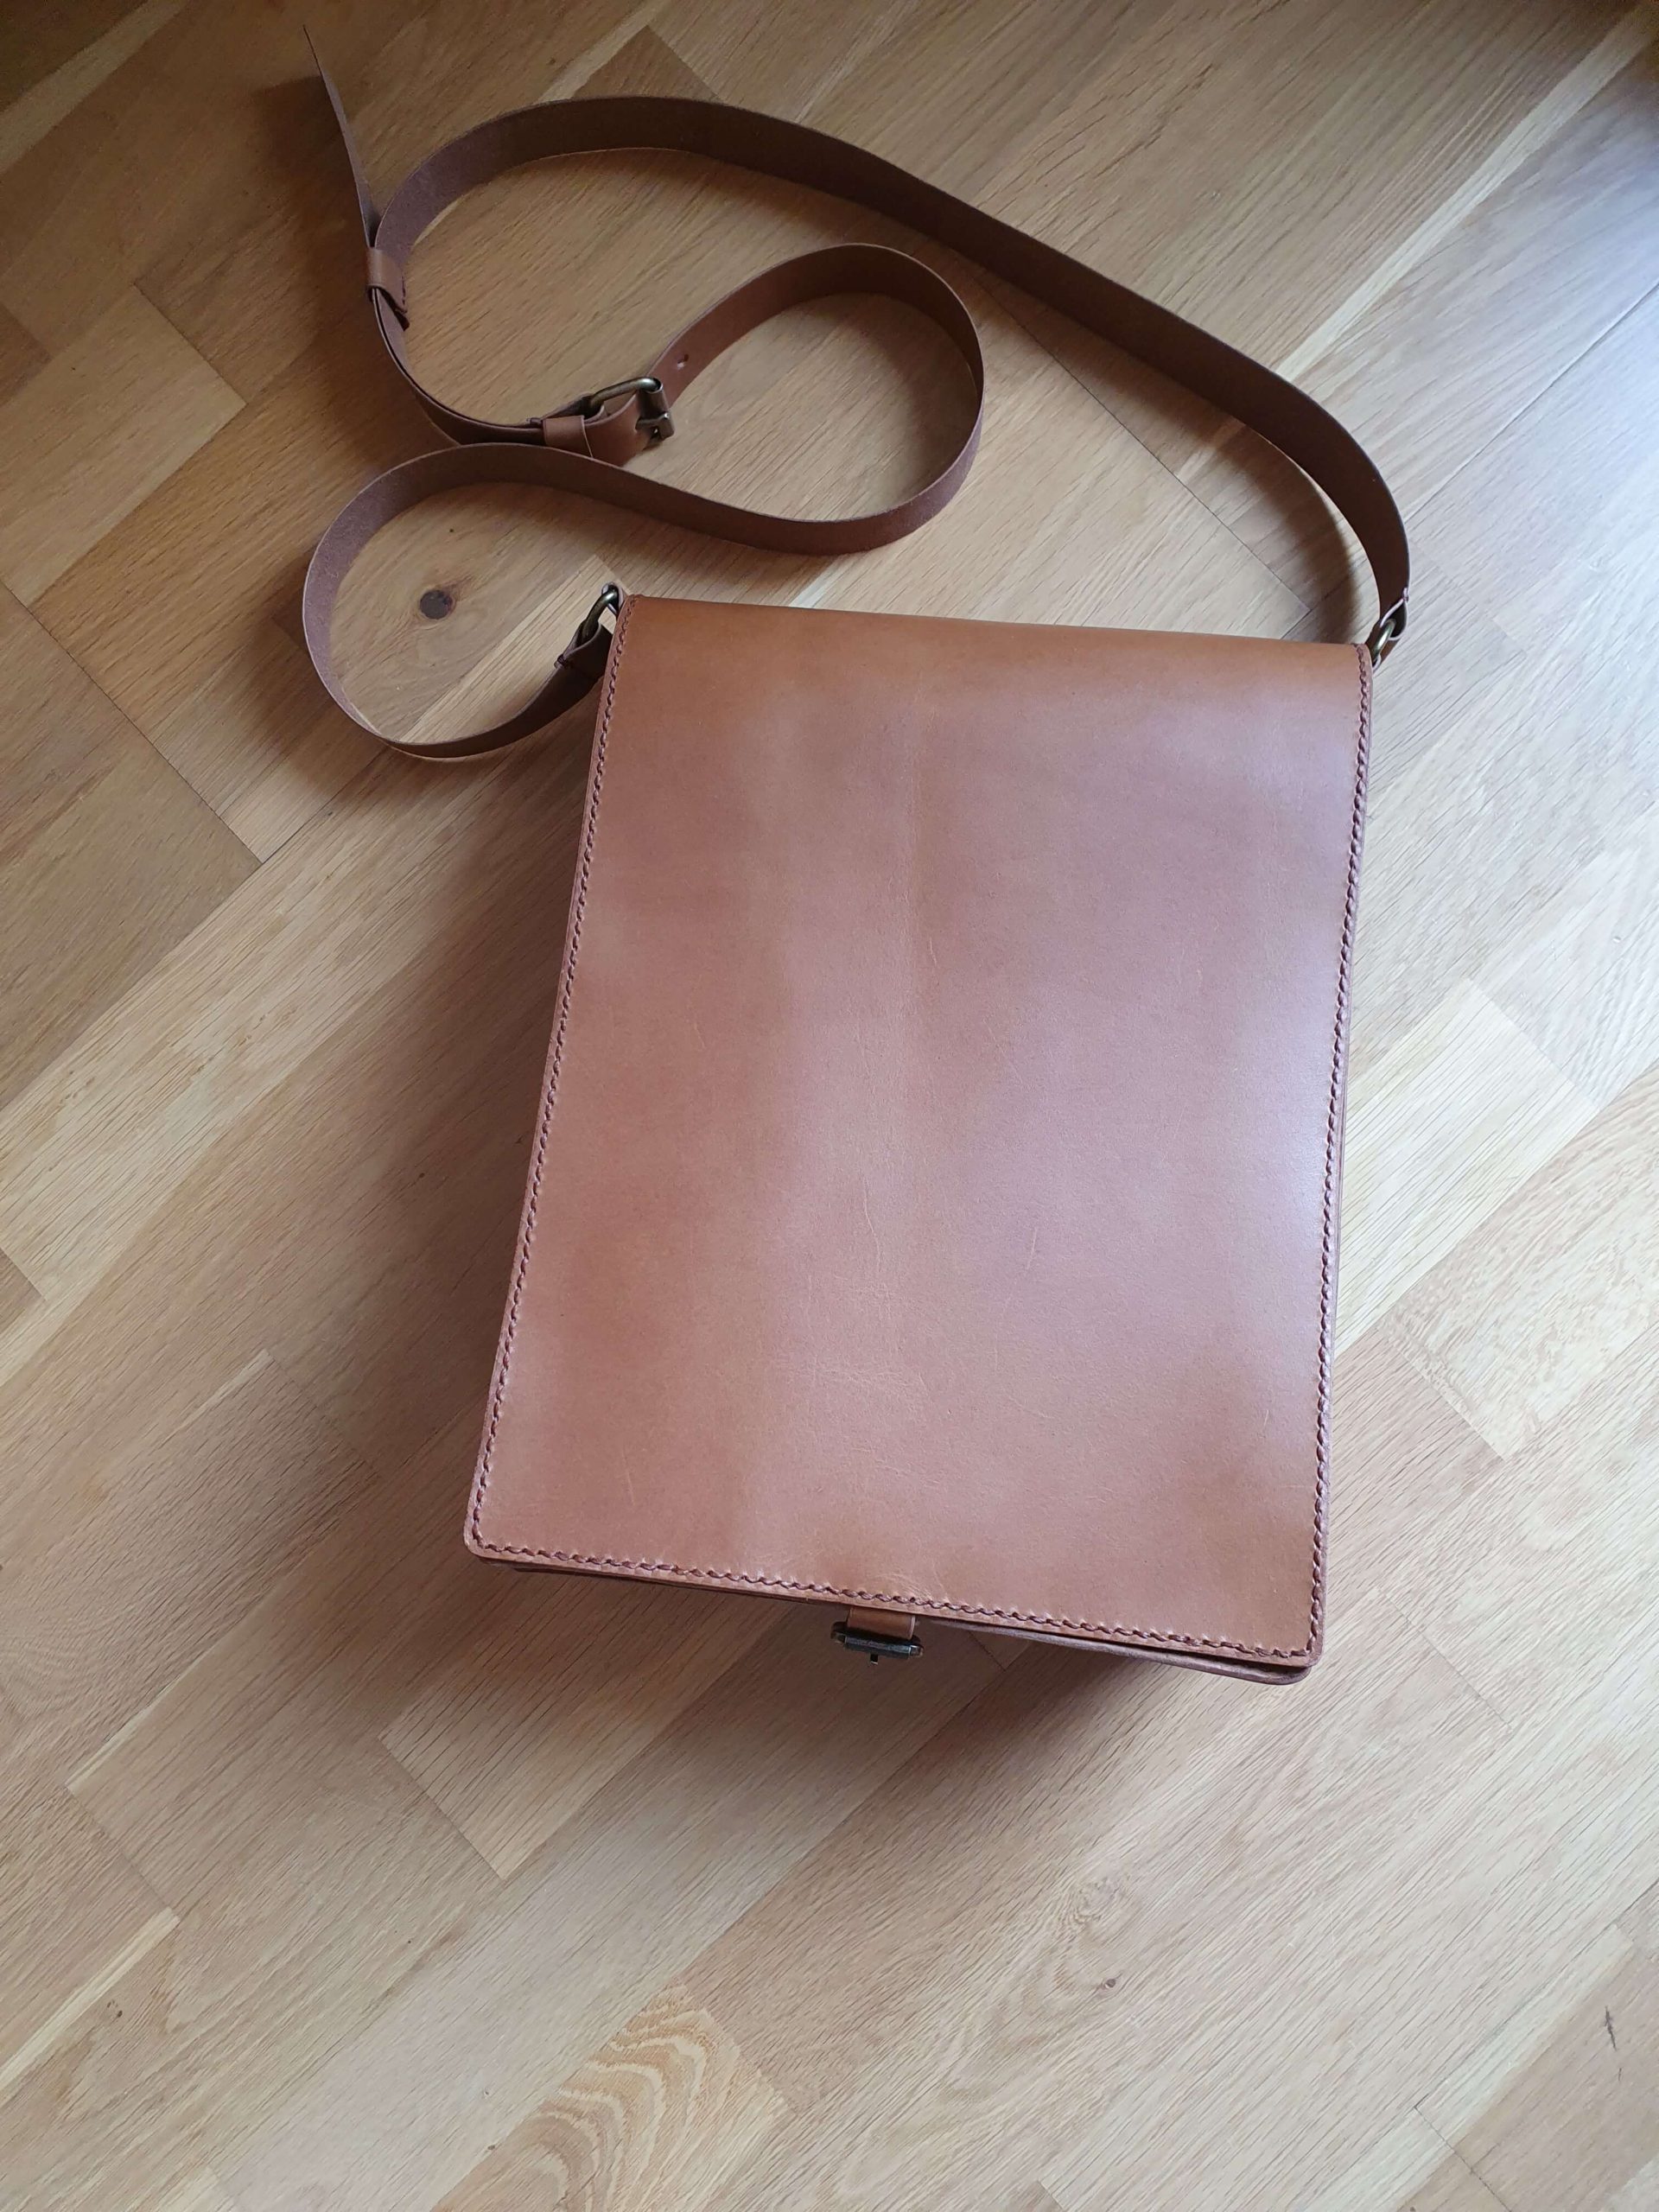 Pánský messenger - kopie starší tašky, jen větší rozměr